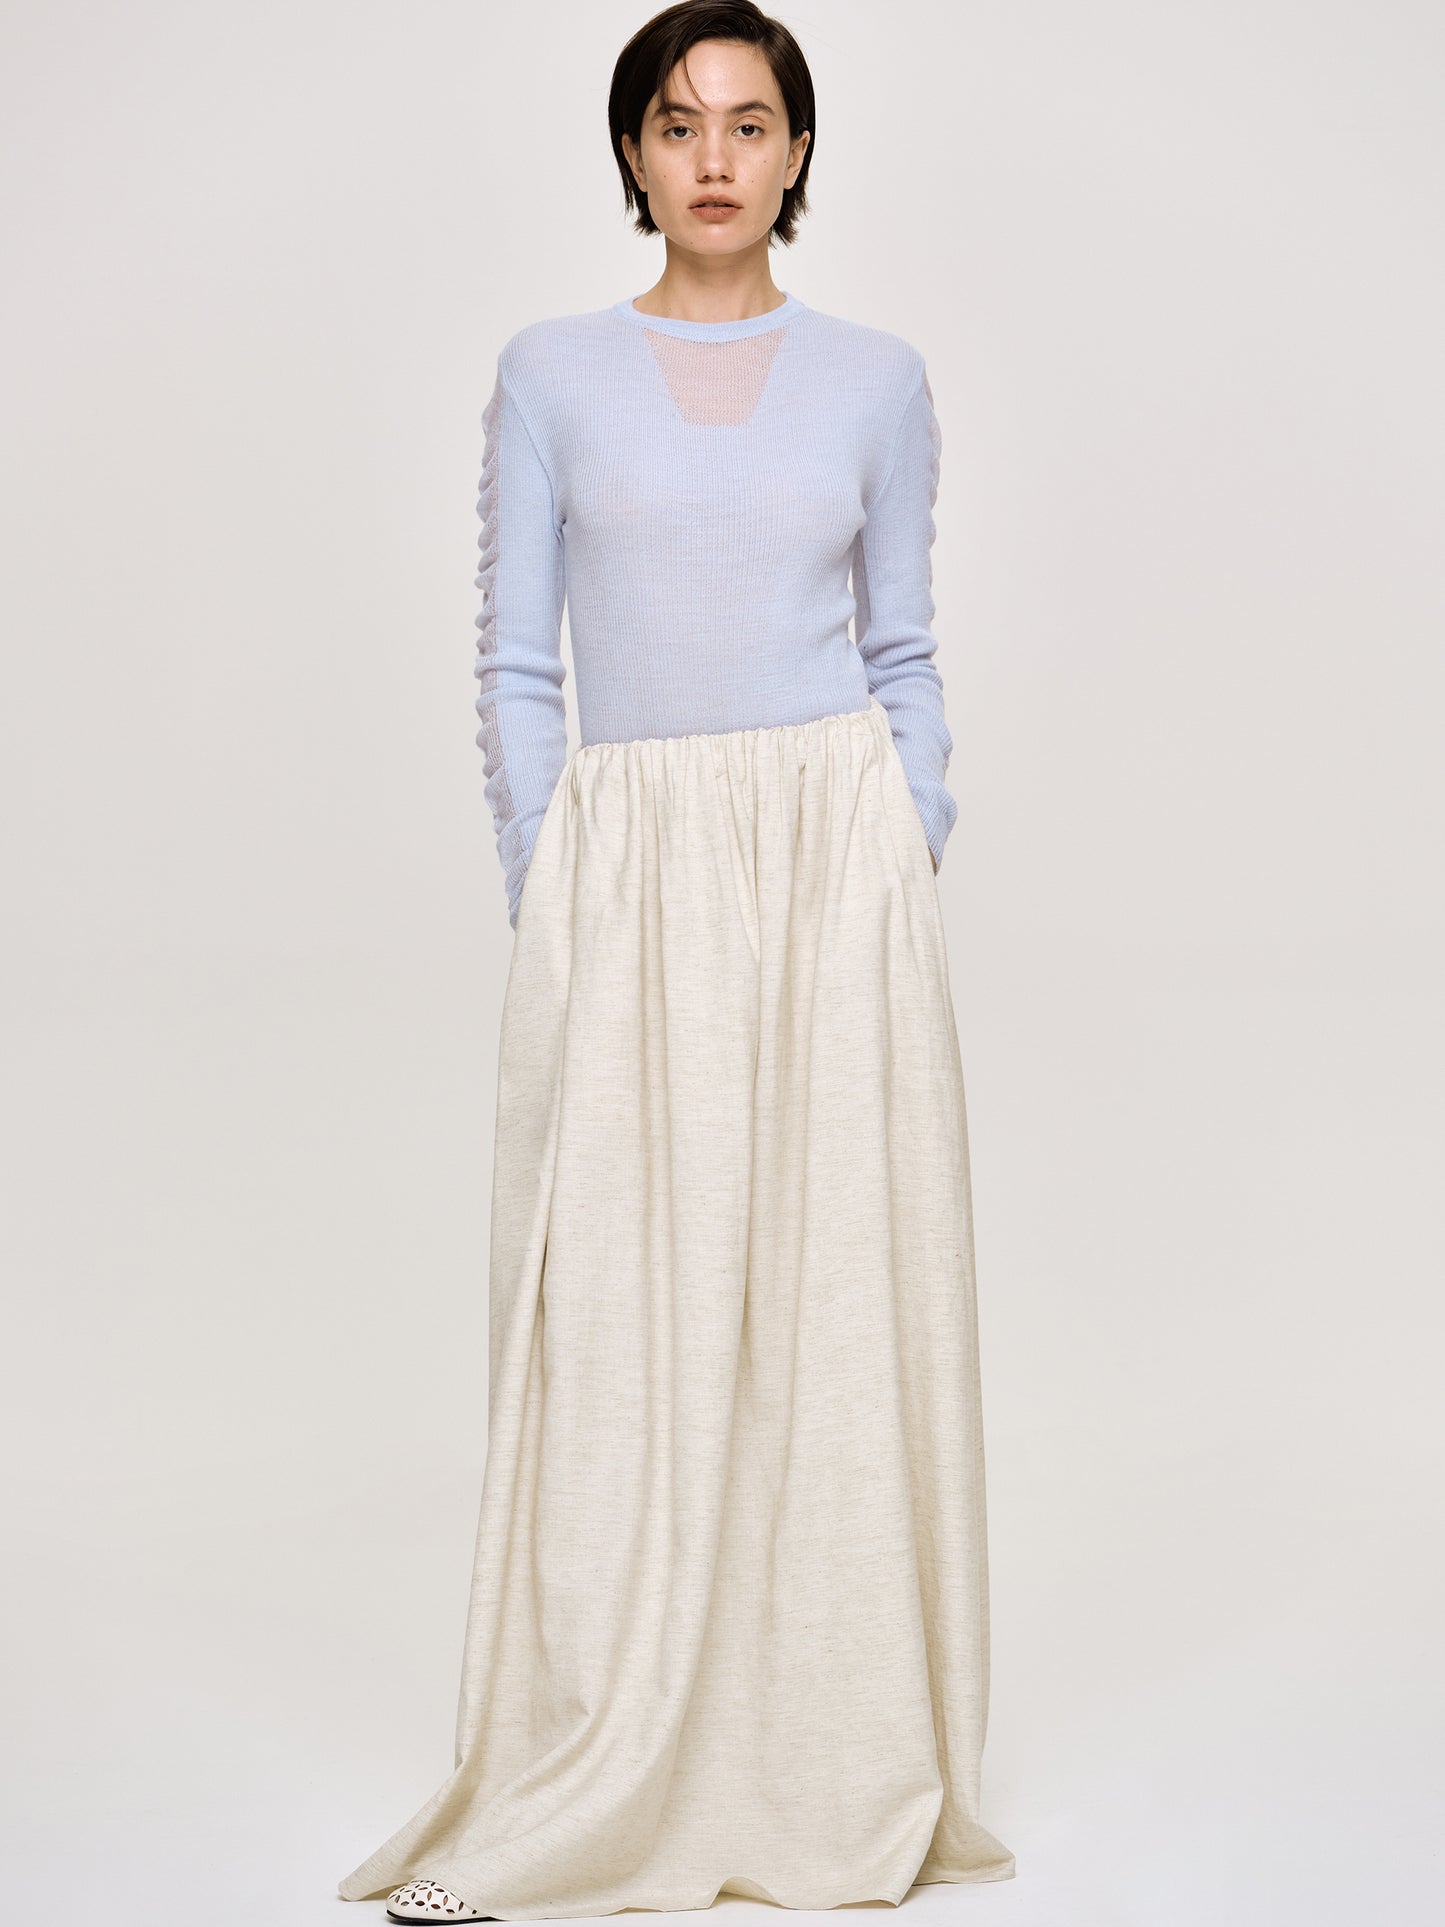 Dhanila Floor-Length Linen Skirt, Natural